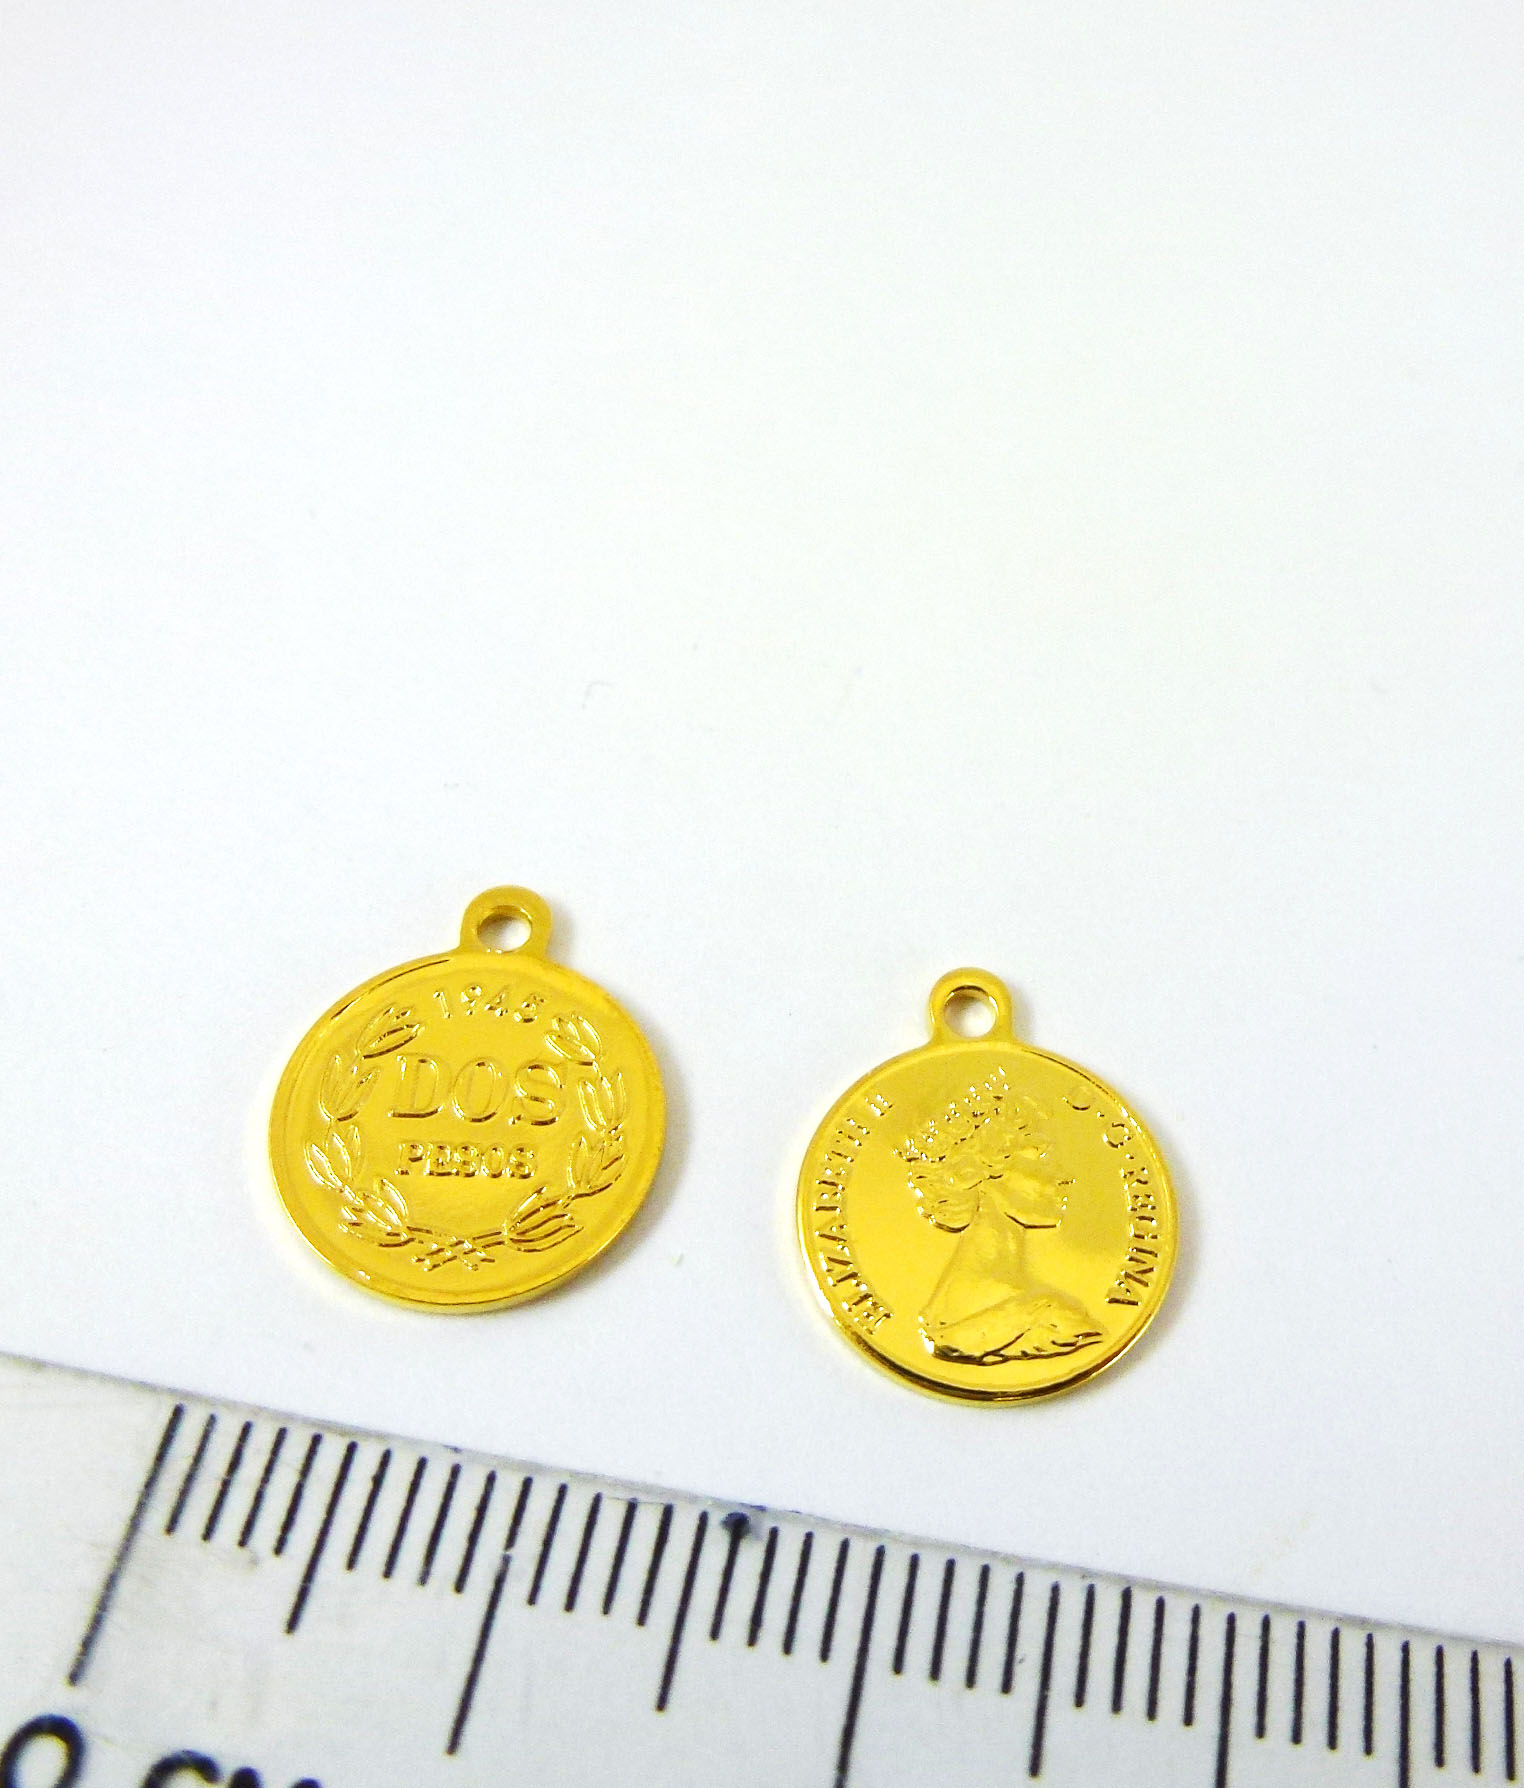 12mm銅鍍金色單孔美國錢幣